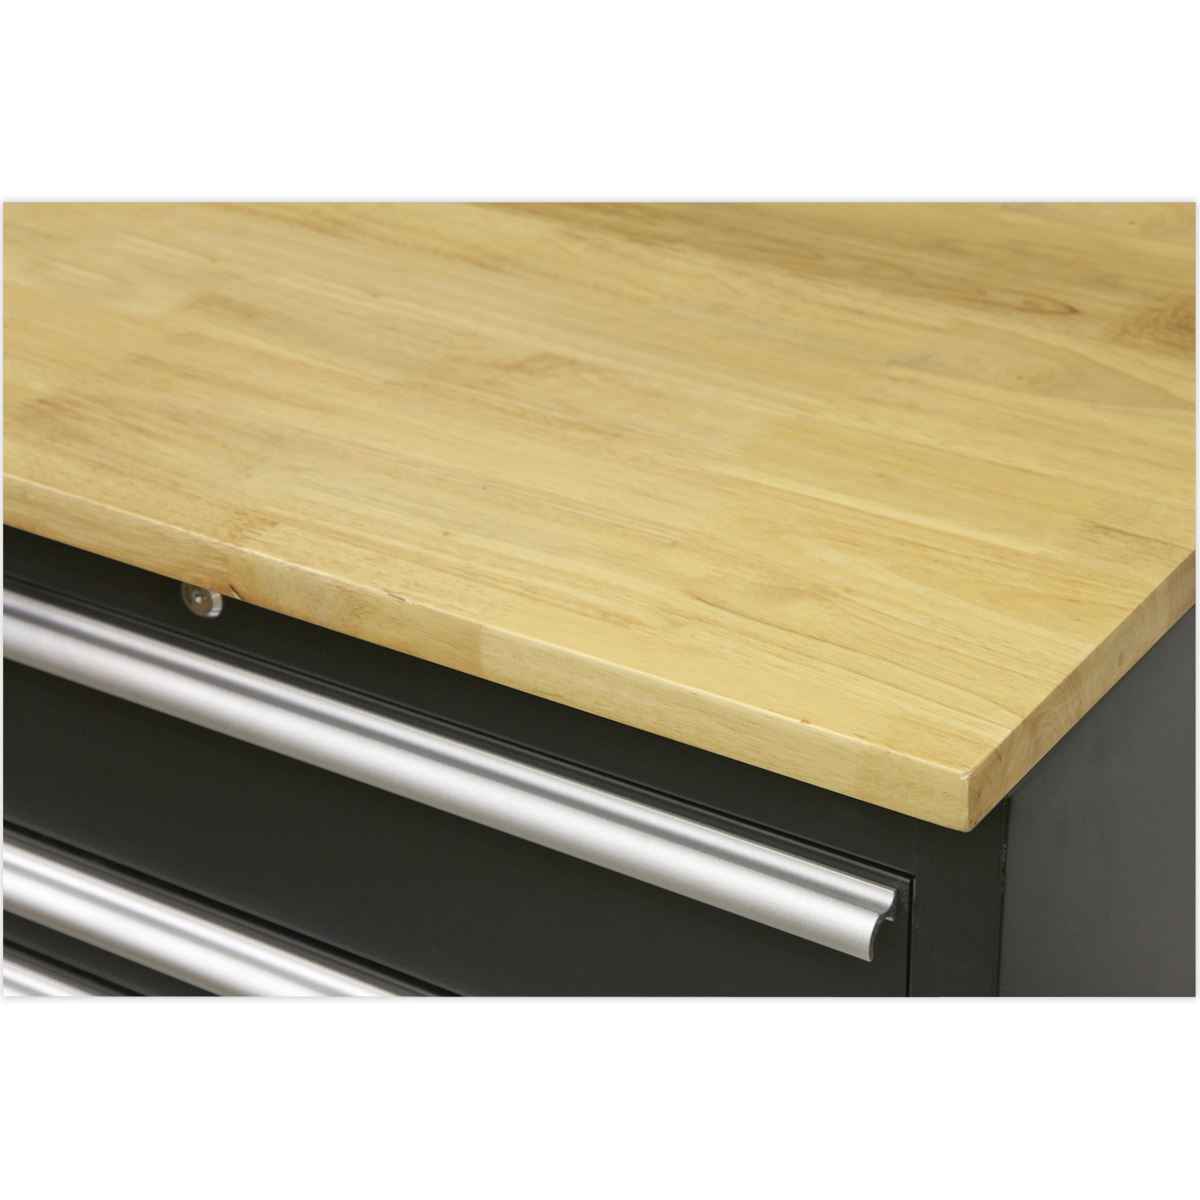 Sealey Premier Premier 3.55m Storage System - Pressed Wood Worktop